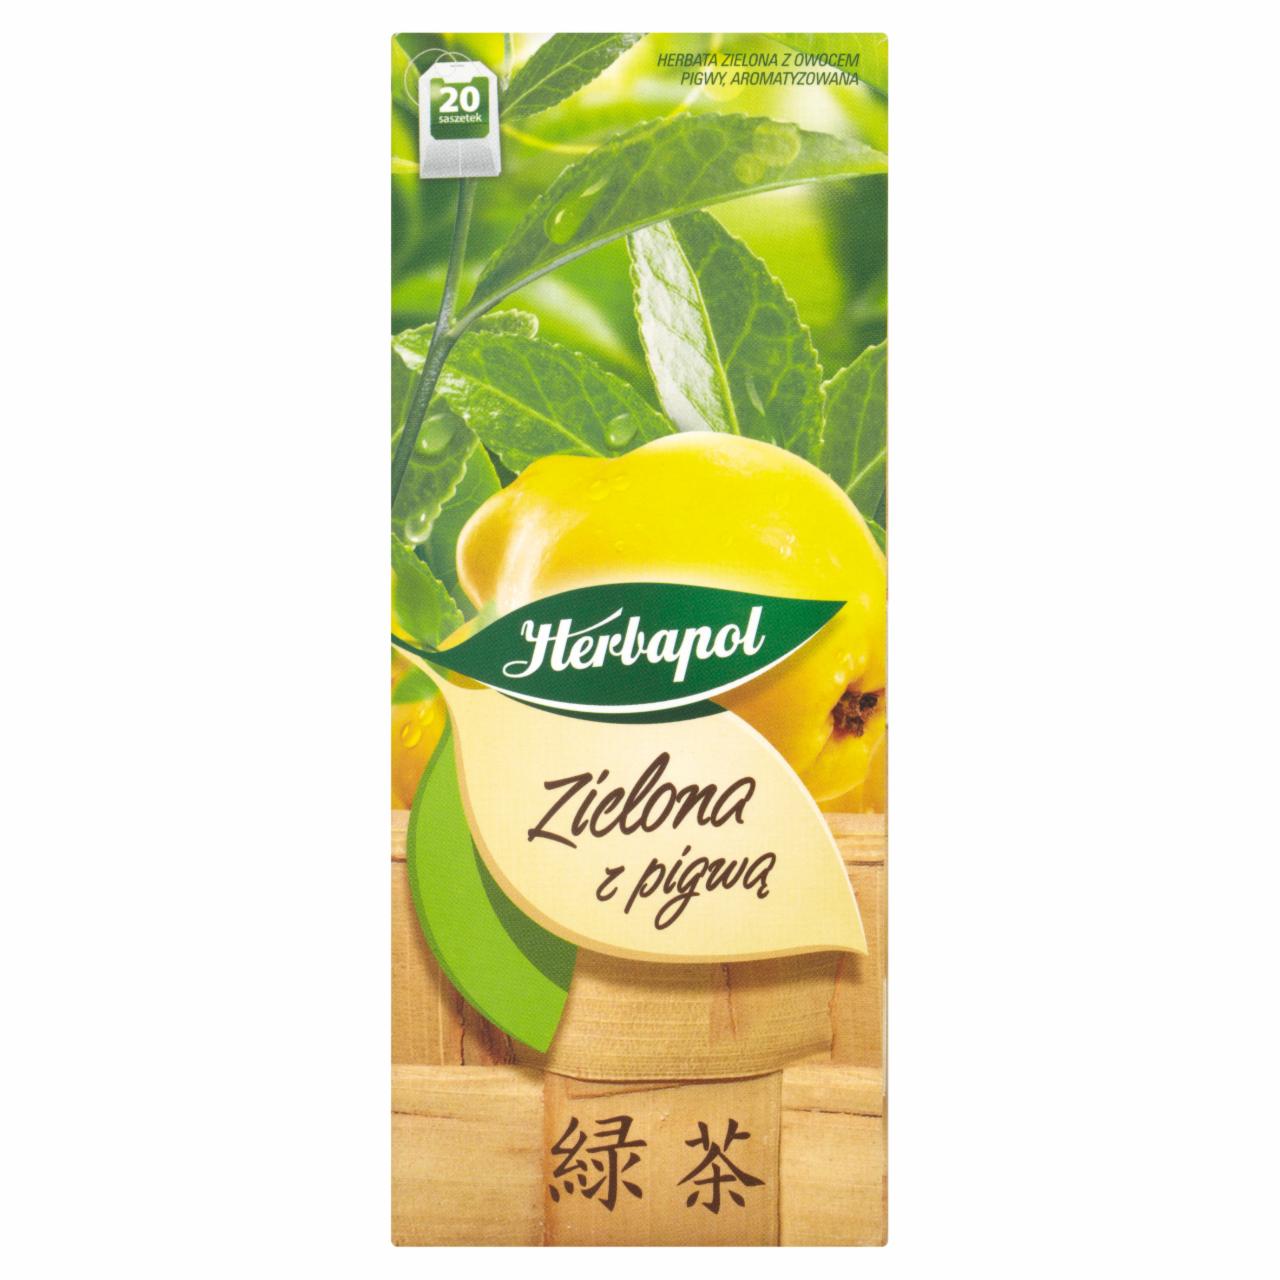 Zdjęcia - Herbapol Herbata zielona z pigwą 30 g (20 saszetek)